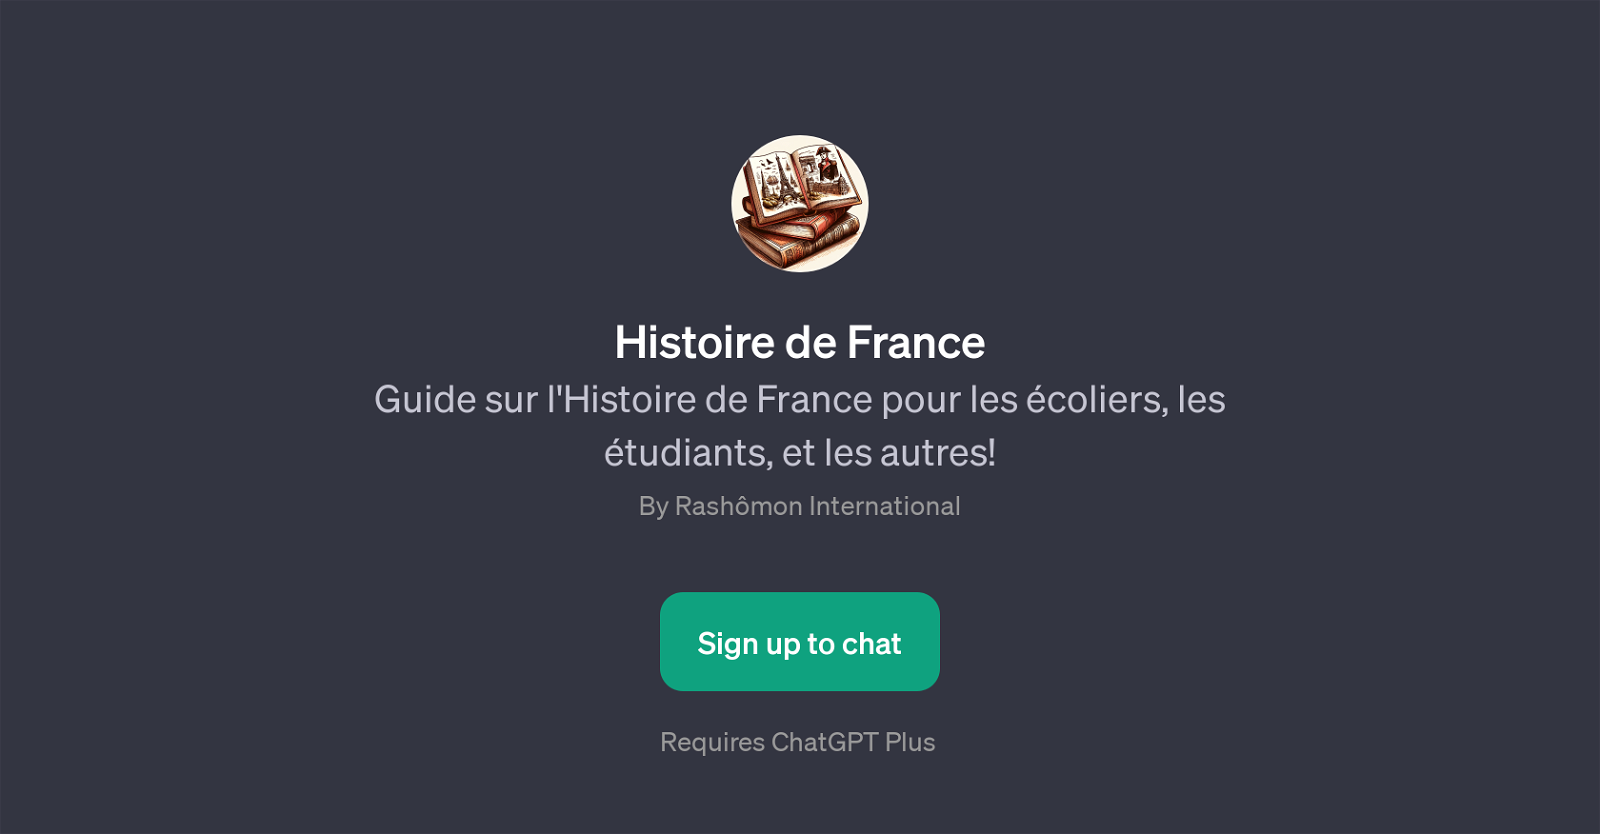 Histoire de France website